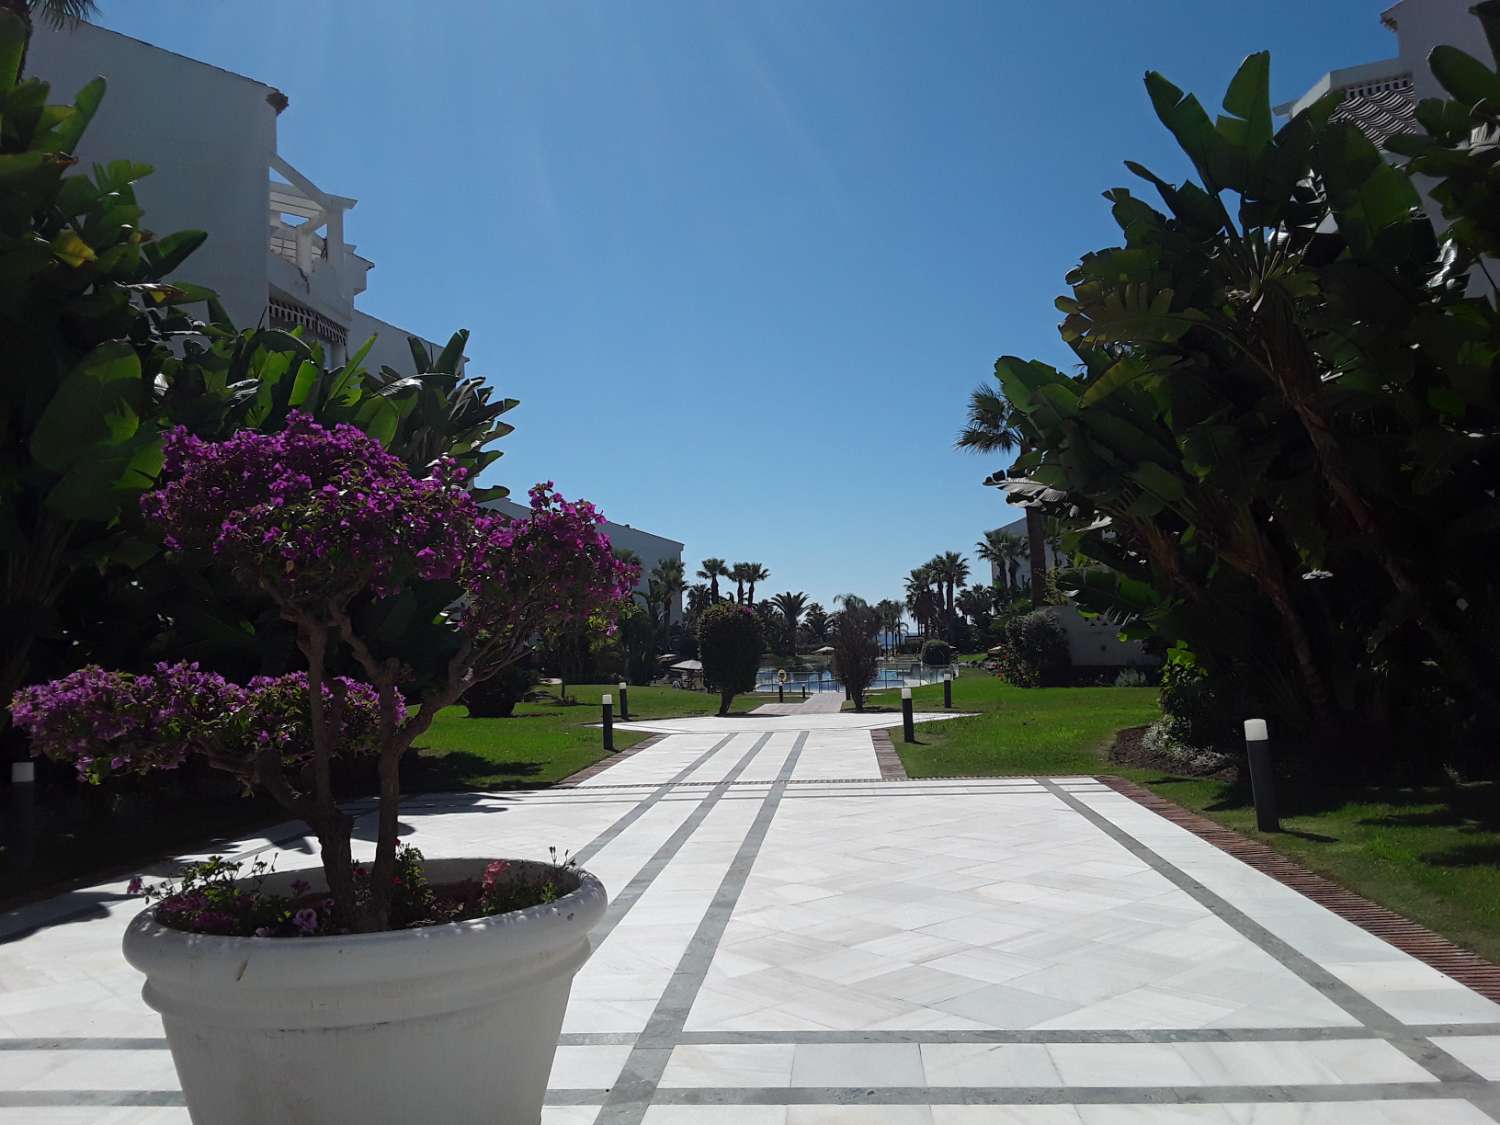 For Rent. Apartamento with sea views. Puerto Banus, Marbella.